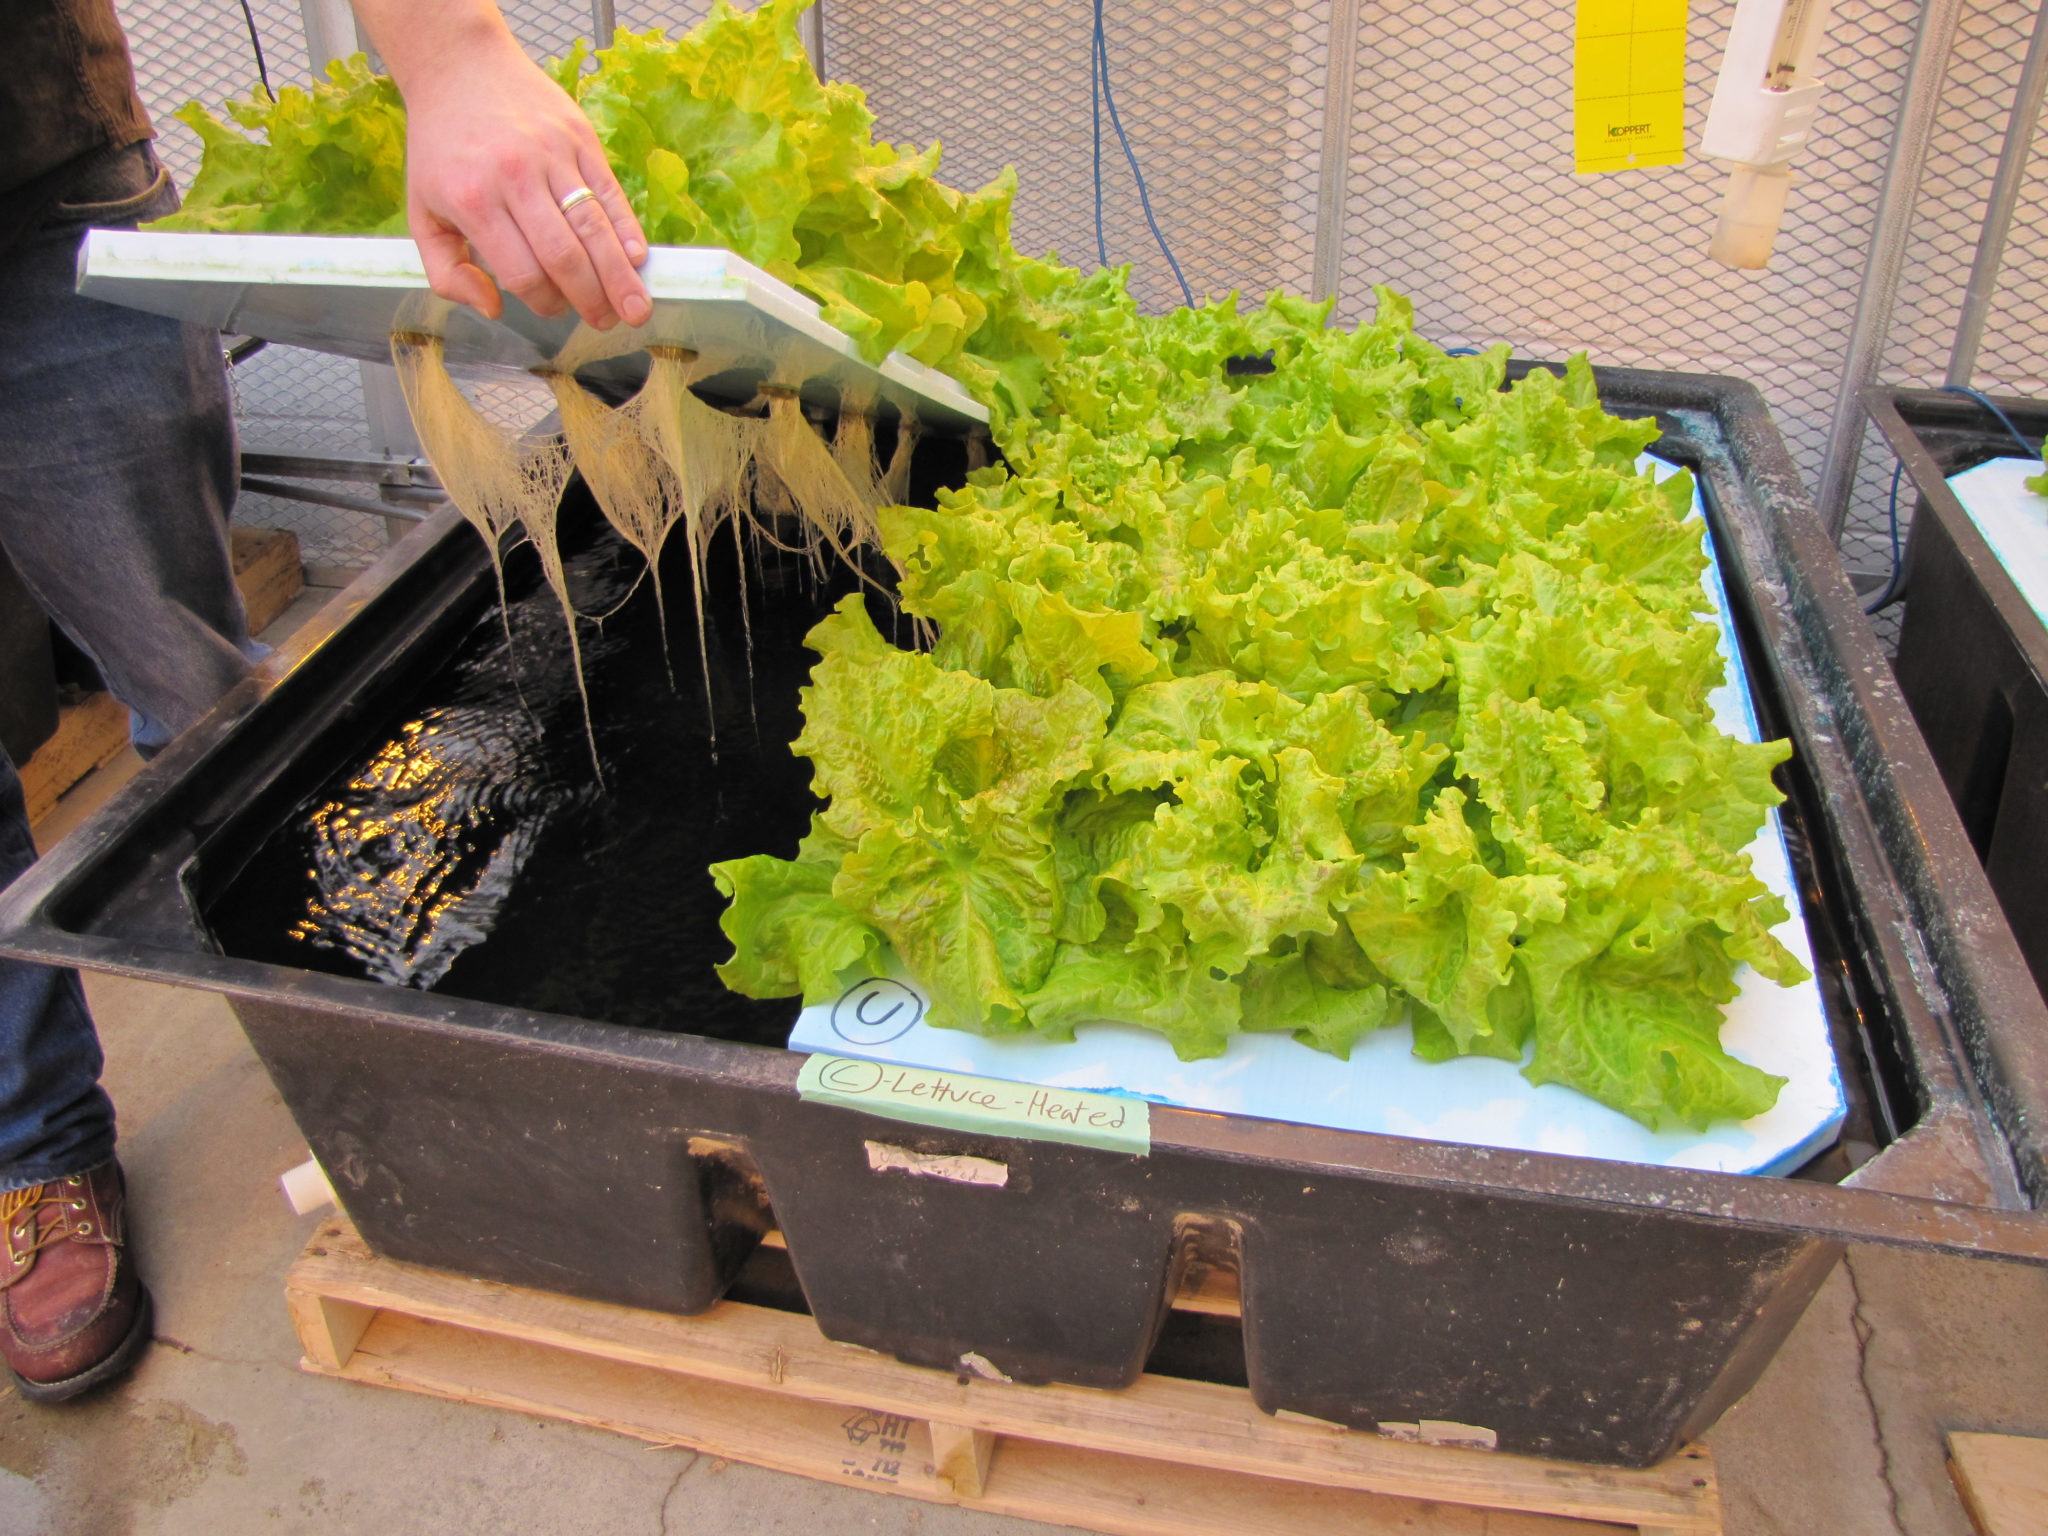  Jak łatwo uprawiać sałatę hydroponiczną?